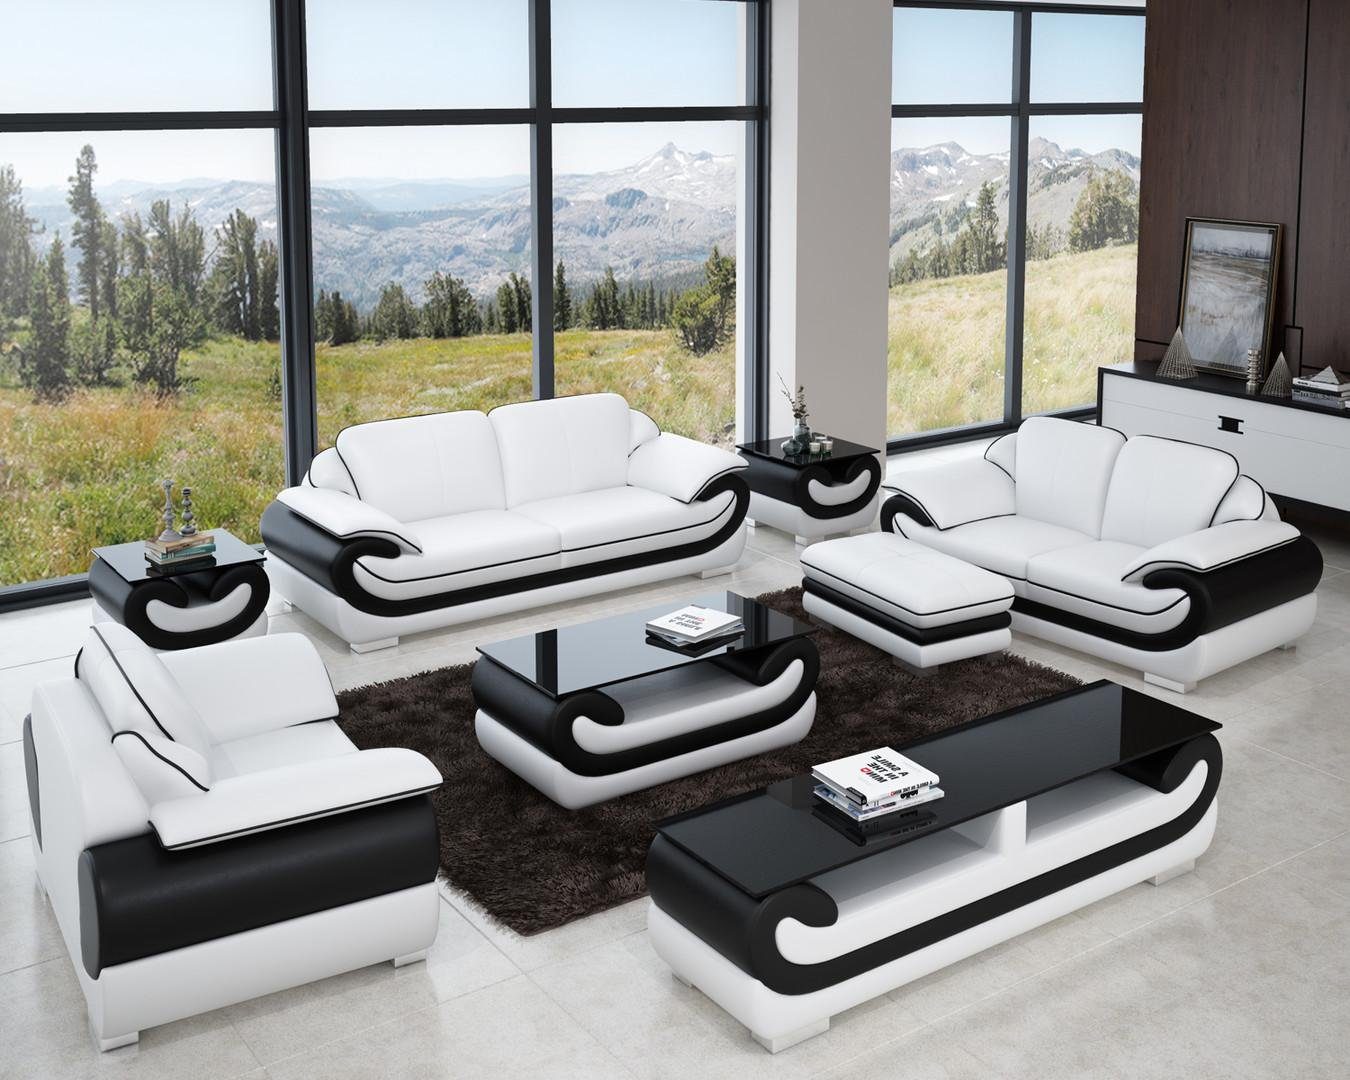 JVmoebel Sofa Ledersofa Couch Wohnlandschaft 3+1+1 Sitzer Garnitur Design, Made in Europe Weiß/Schwarz